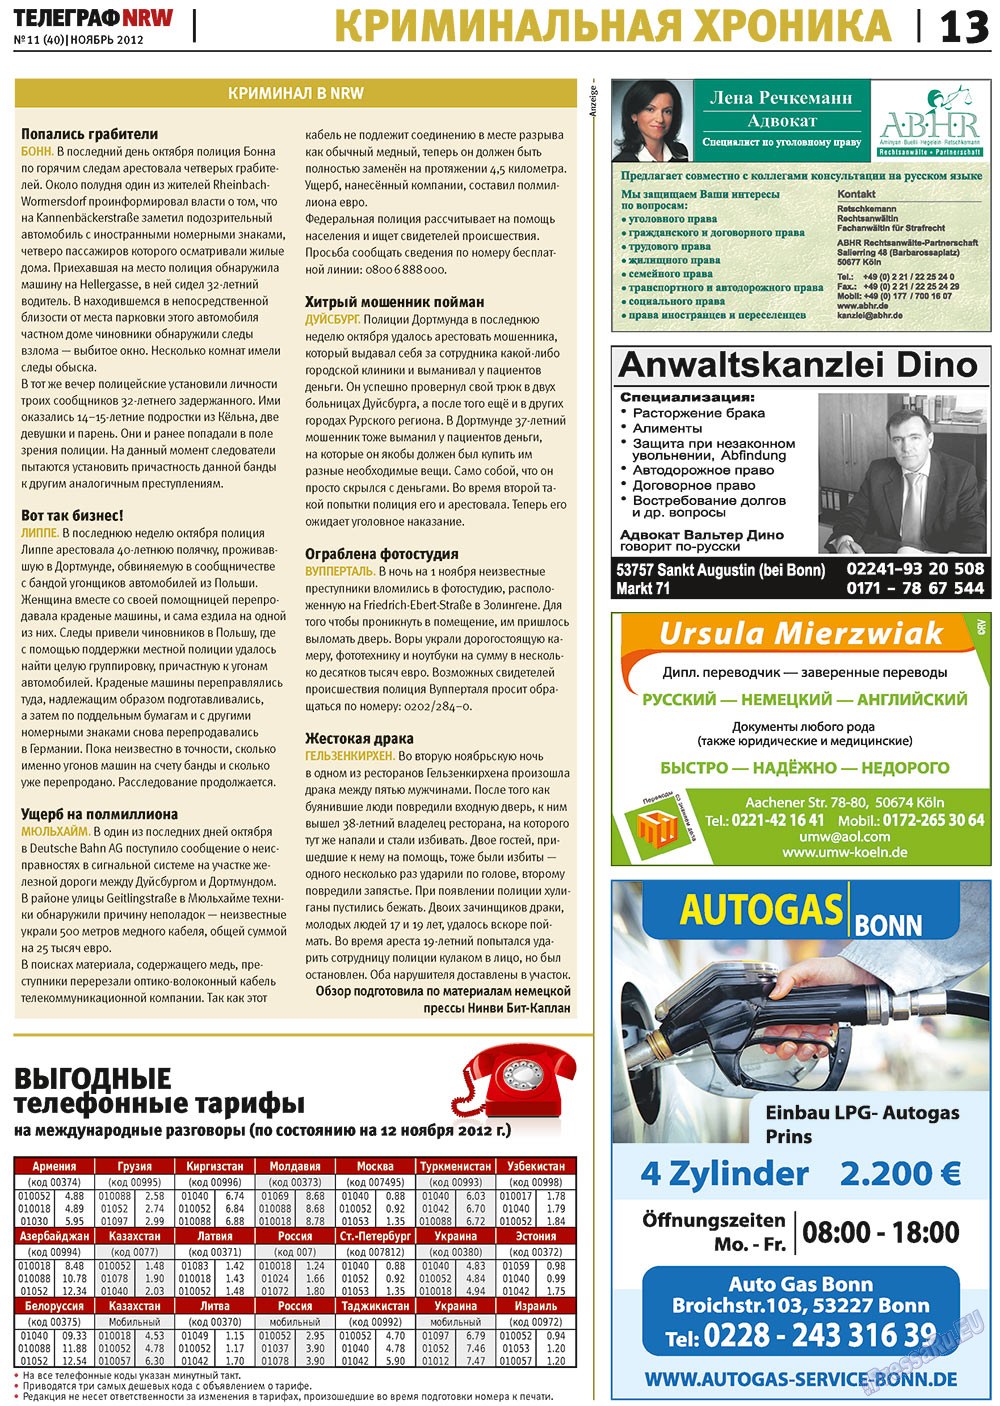 Телеграф NRW (газета). 2012 год, номер 11, стр. 13